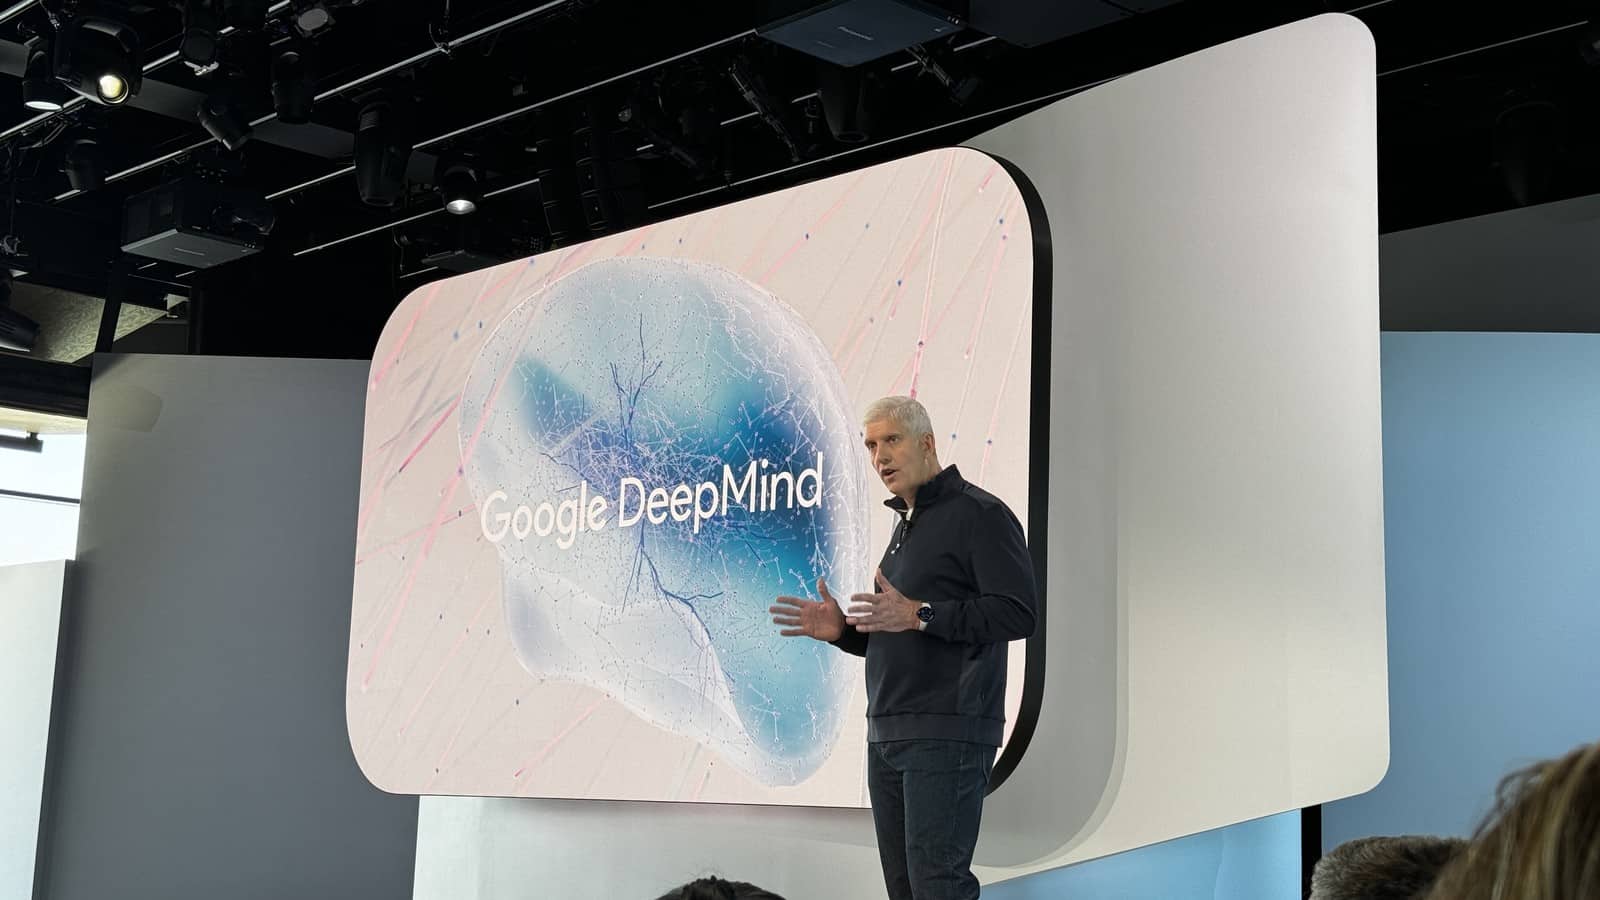 Dos empleados de Google DeepMind están desarrollando su propia startup de IA